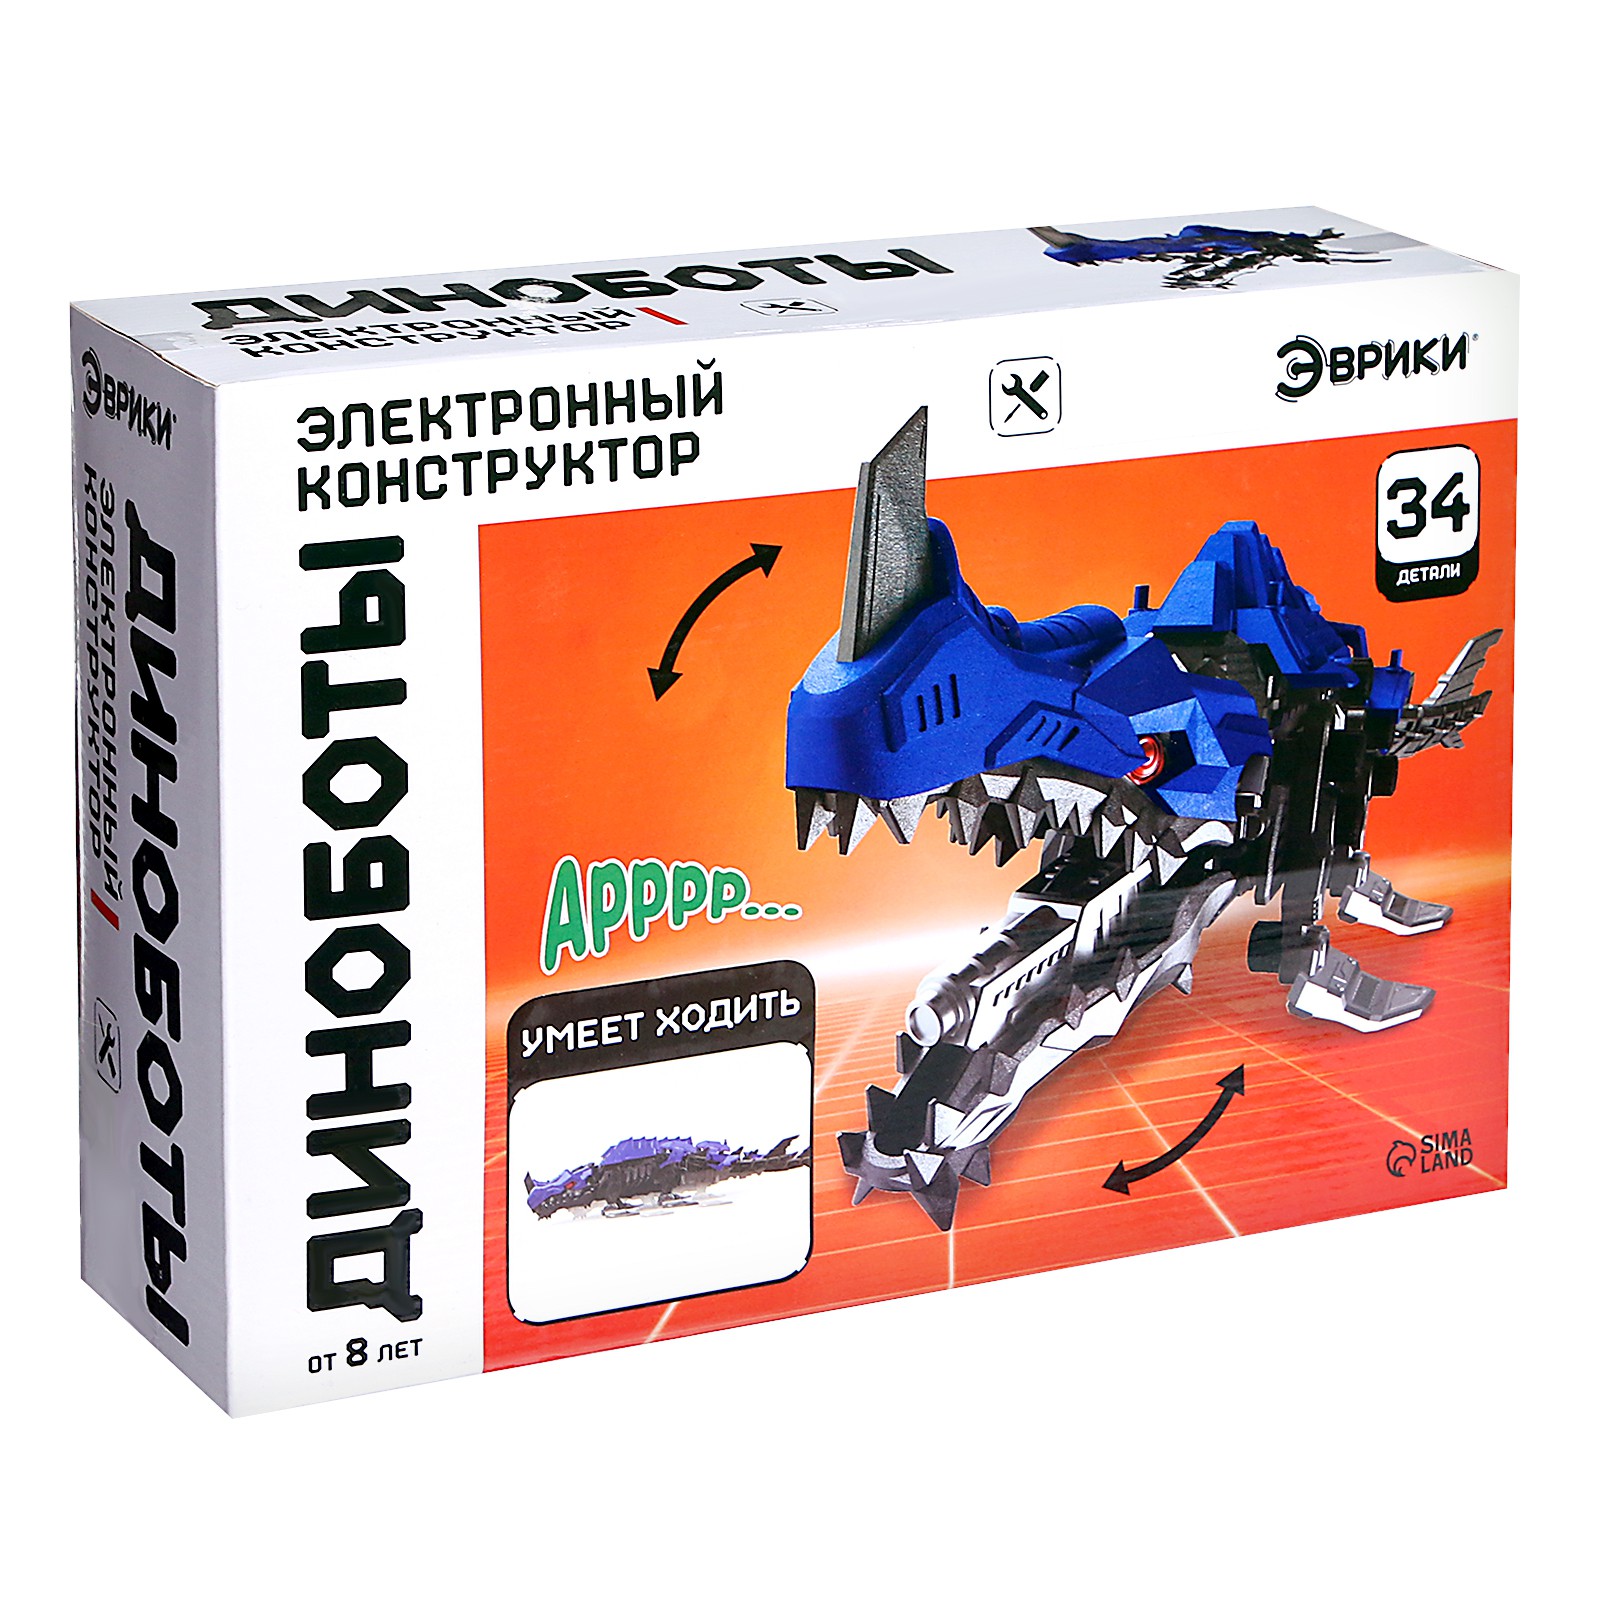 Электронный конструктор Эврики Диноботы «Аллозавр» 34 детали - фото 6